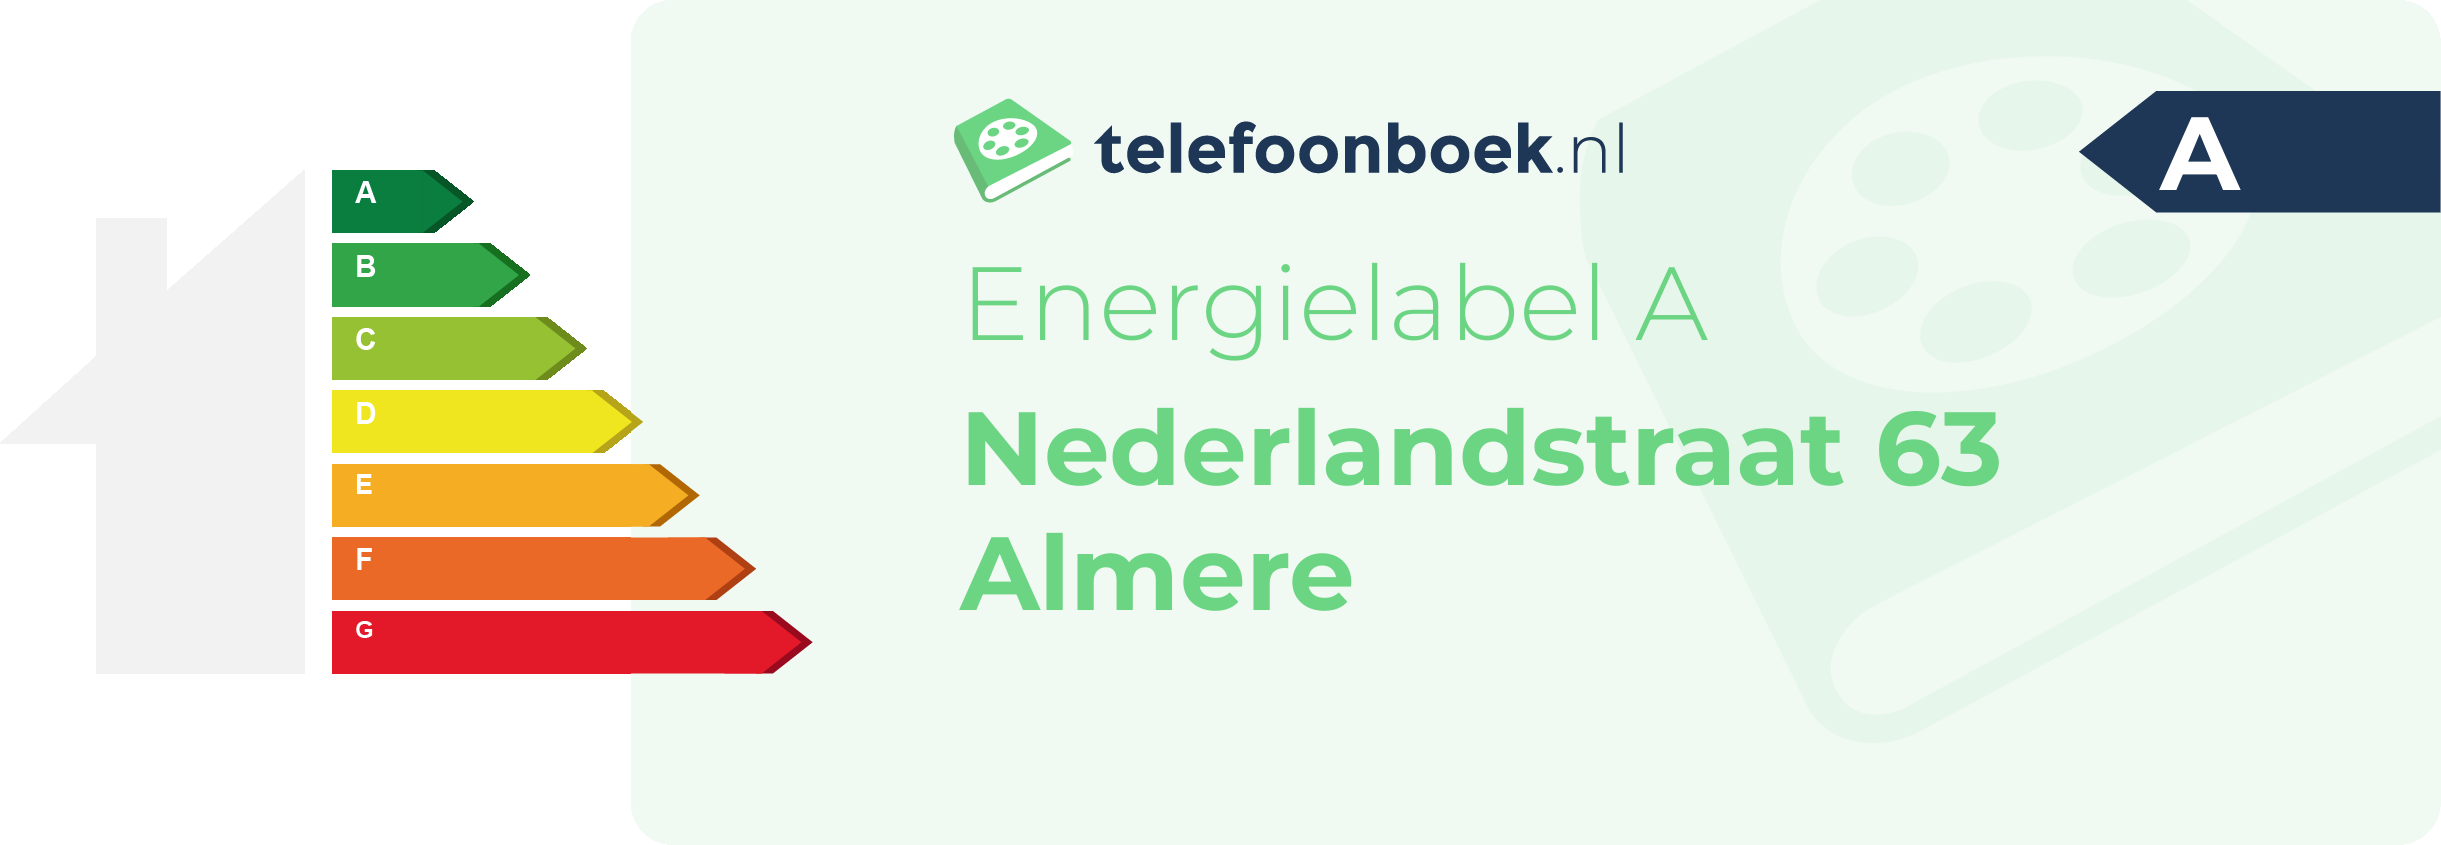 Energielabel Nederlandstraat 63 Almere